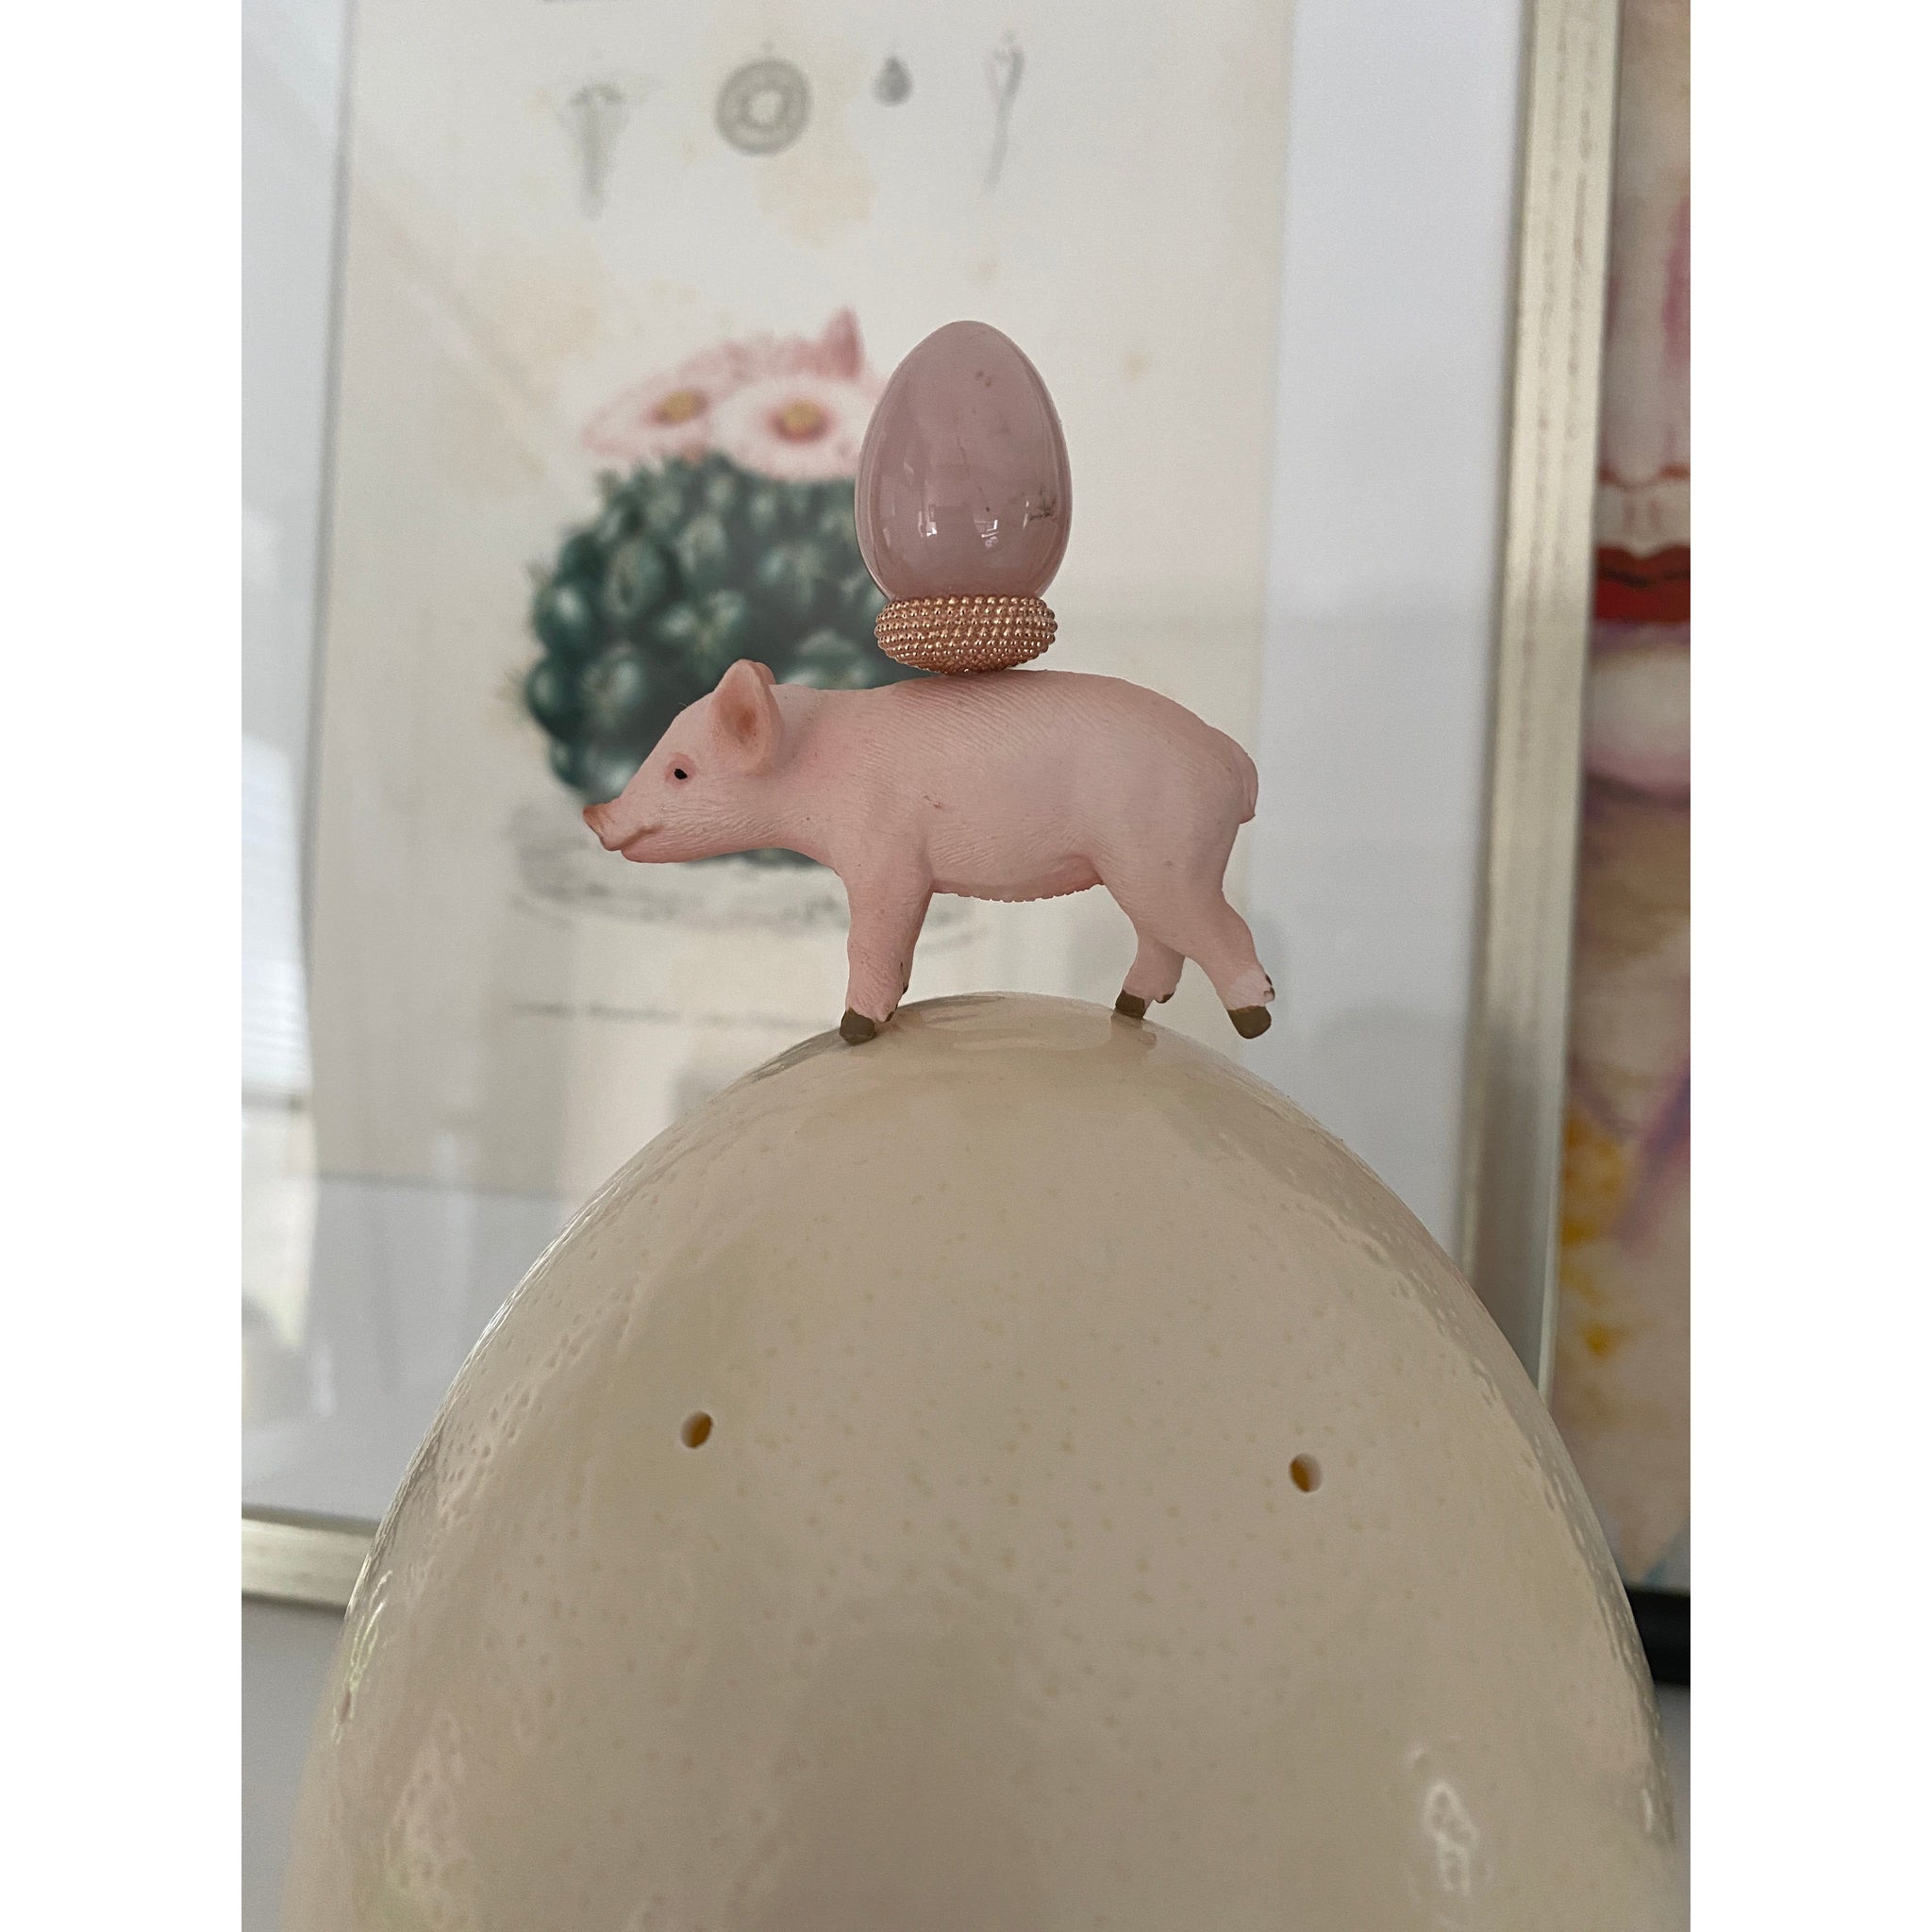 Straußeneilampe: Glücksschwein mit Rosenquarz-Ei